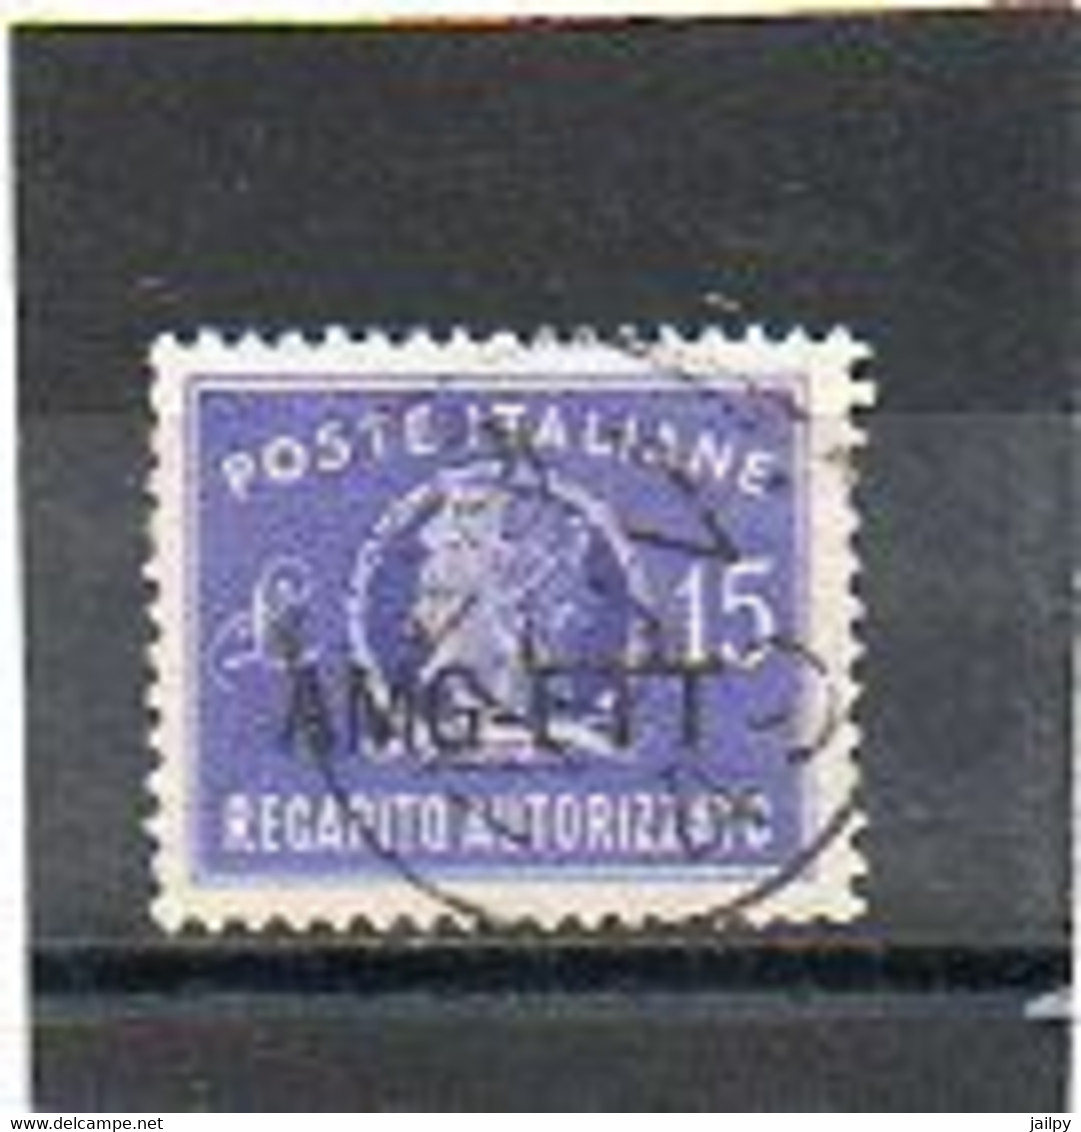 ITALIE   TRIESTE   AMG FTT    Timbre Fiscal    15 Lire   1949   Oblitéré - Fiscales